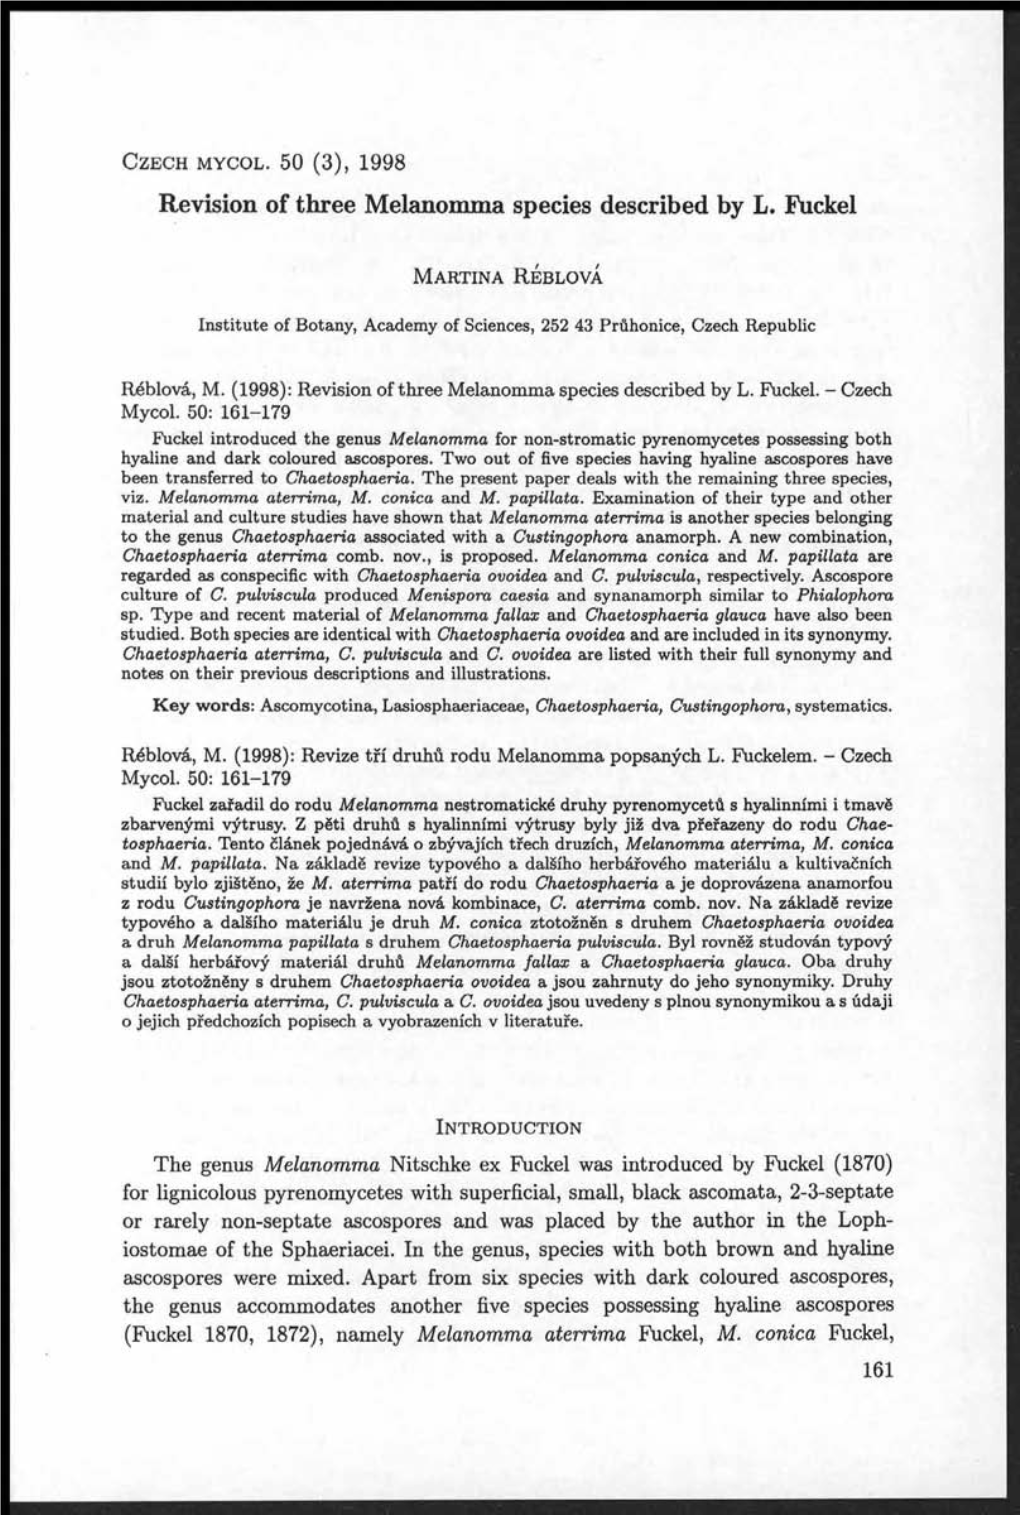 Revision of Three Melanomma Species Described by L. Fuckel